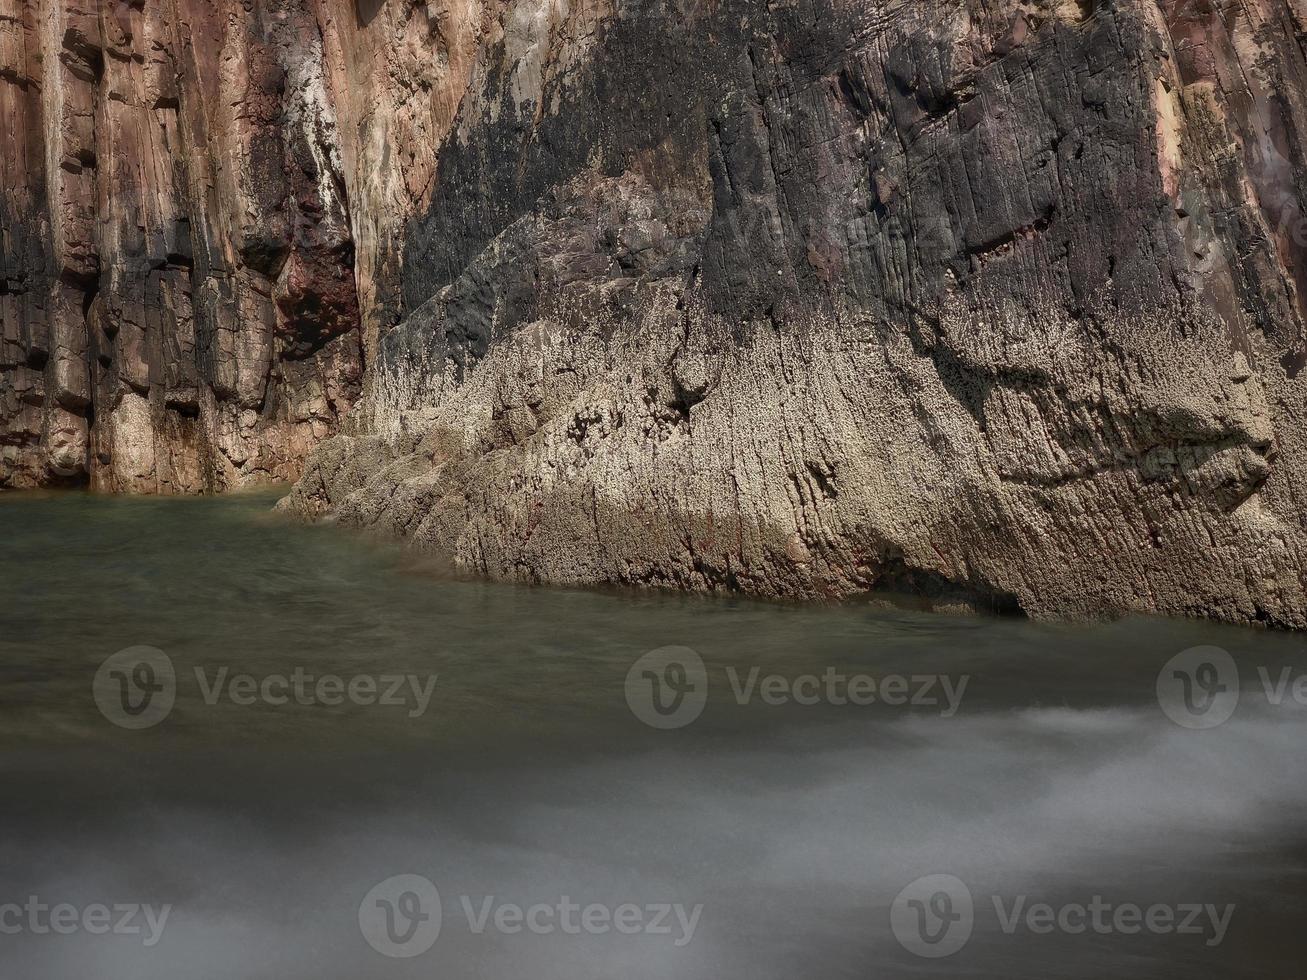 rochers à bords droits à marée basse d'une plage sur la côte asturienne photo